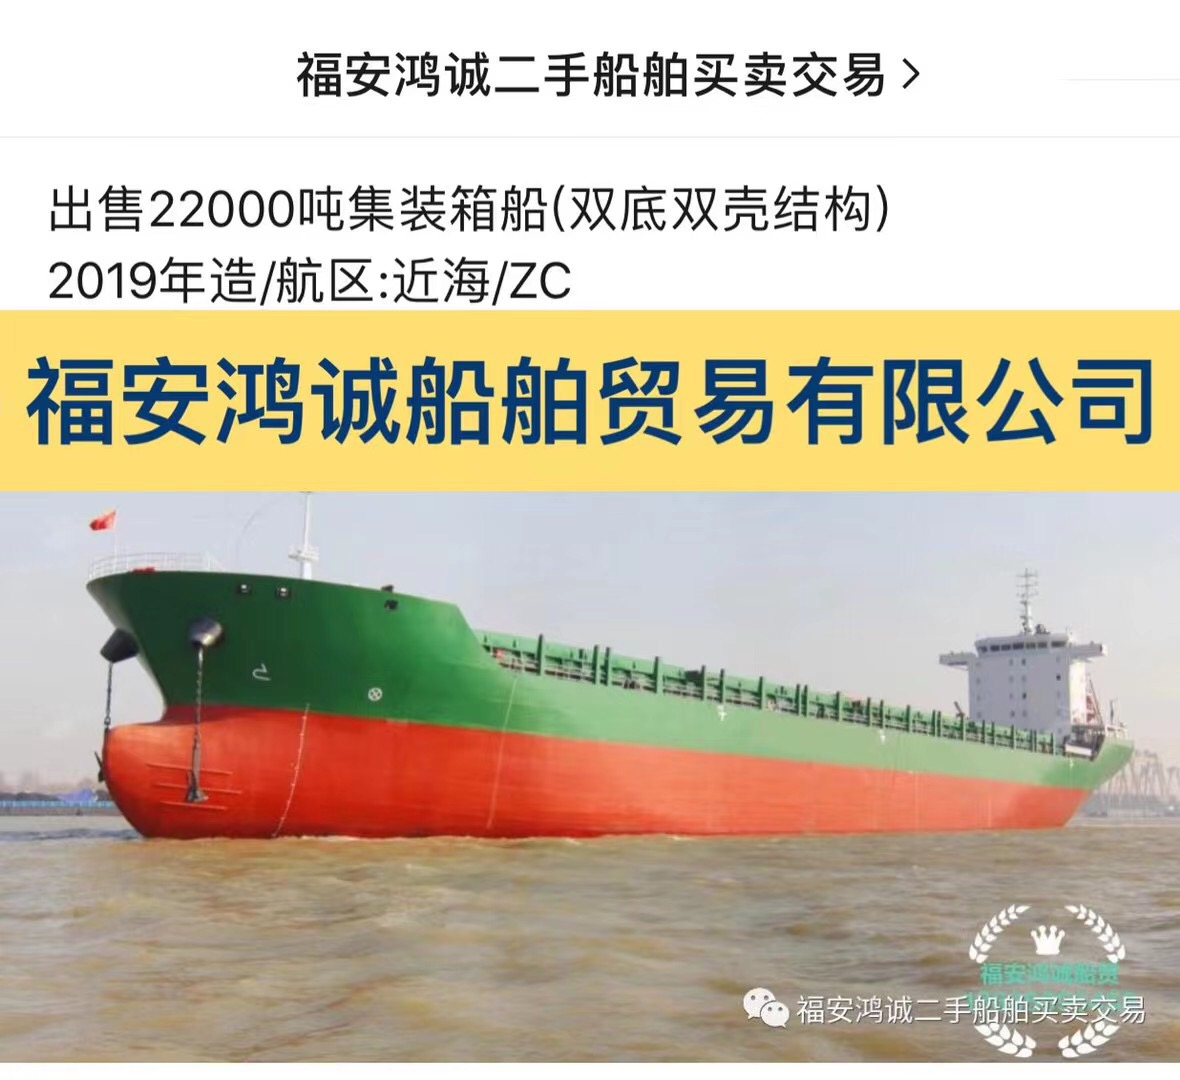 出售22000吨集装箱船(双底双壳结构)2019年江苏造